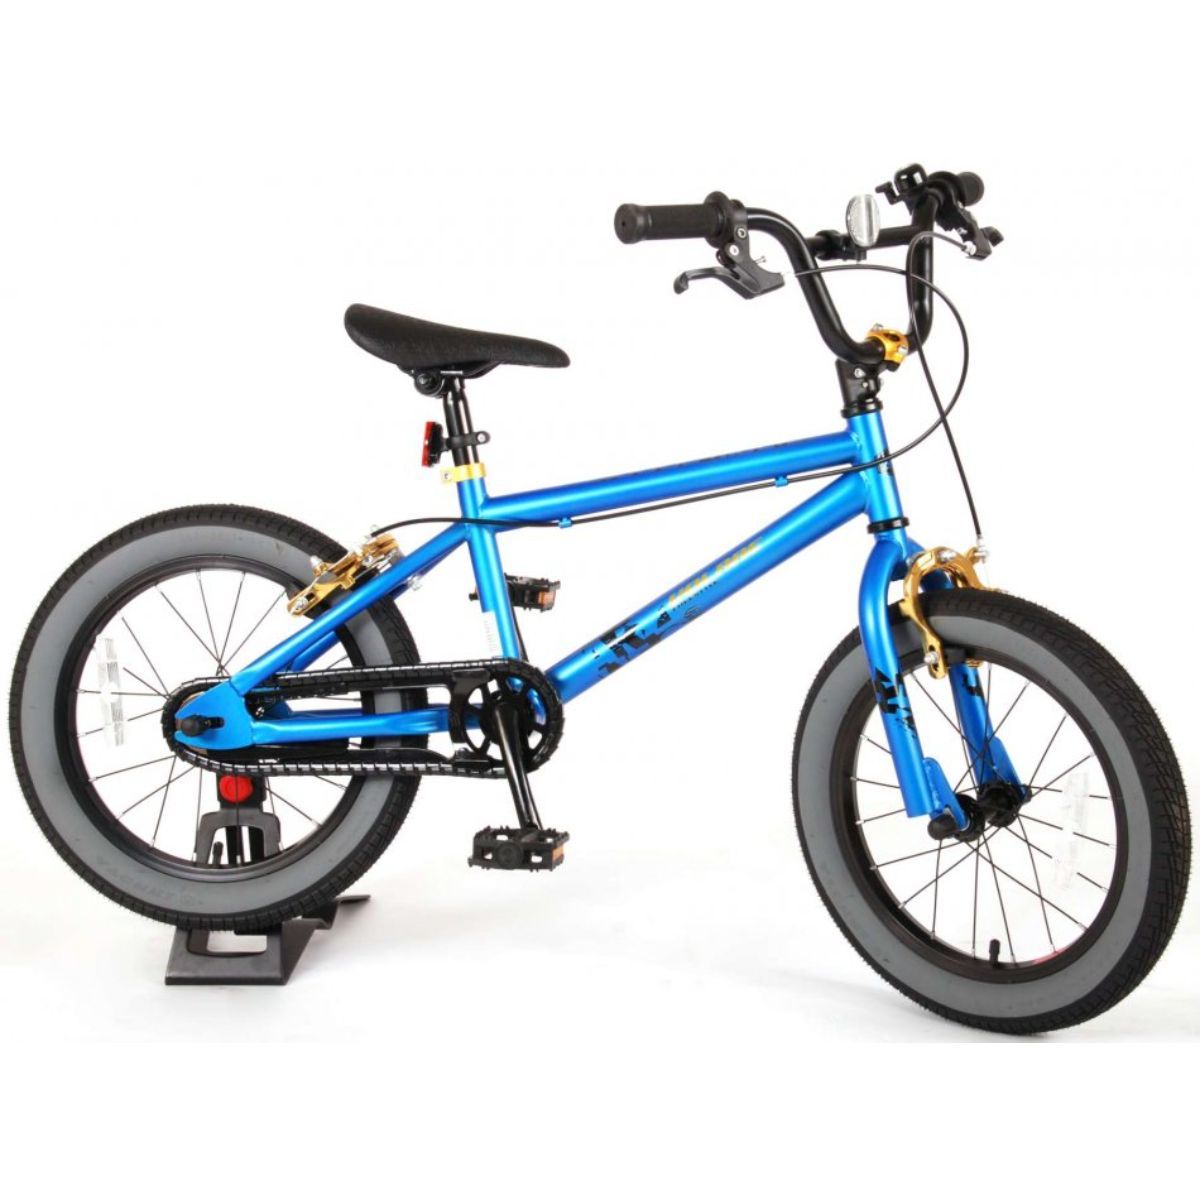 Bicicleta EandL Cycles, Cool Rider, 16 Inch, Albastru EandL CYCLES